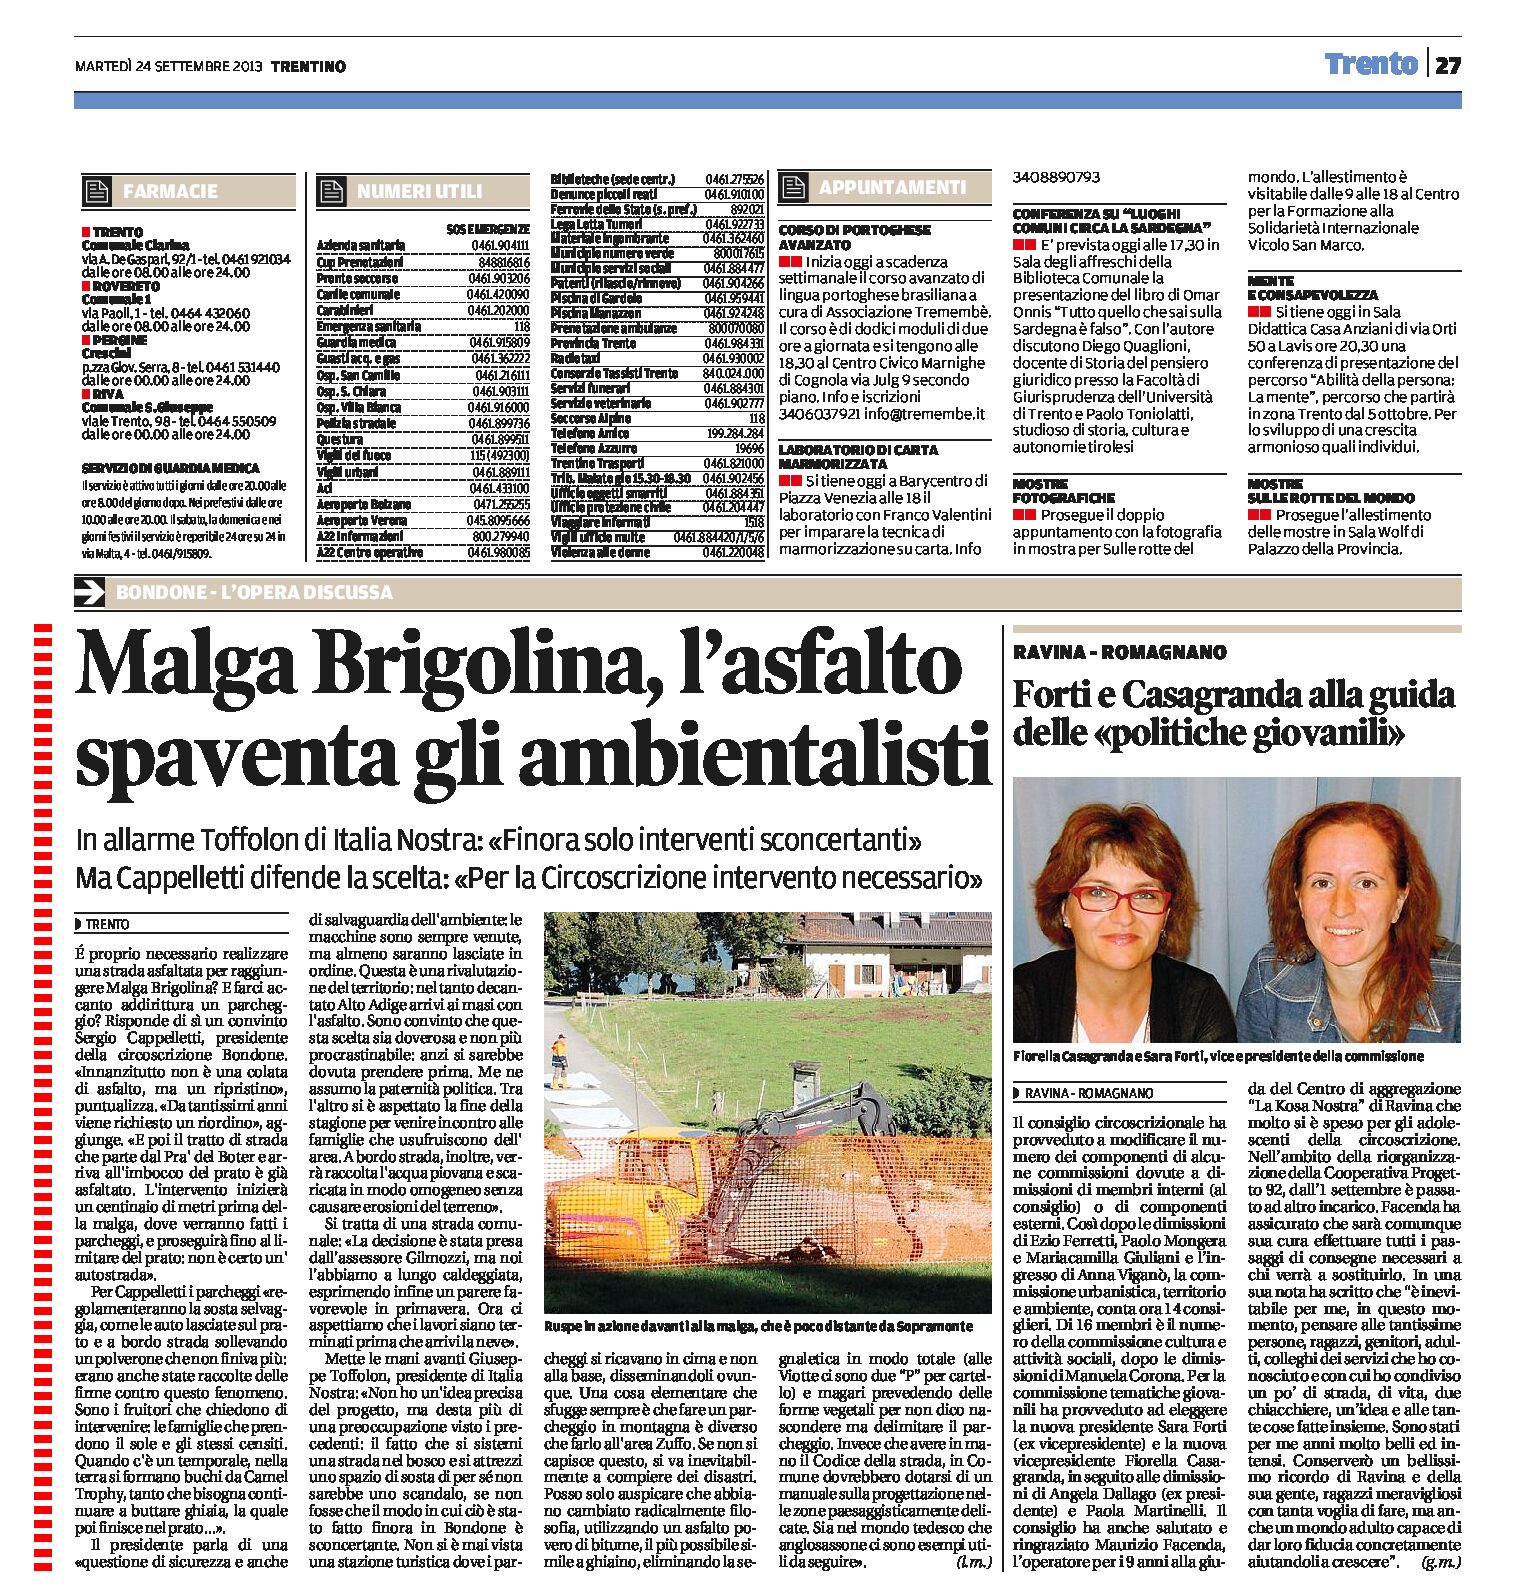 Bondone: Malga Brigolina, l’allarme di Italia Nostra.